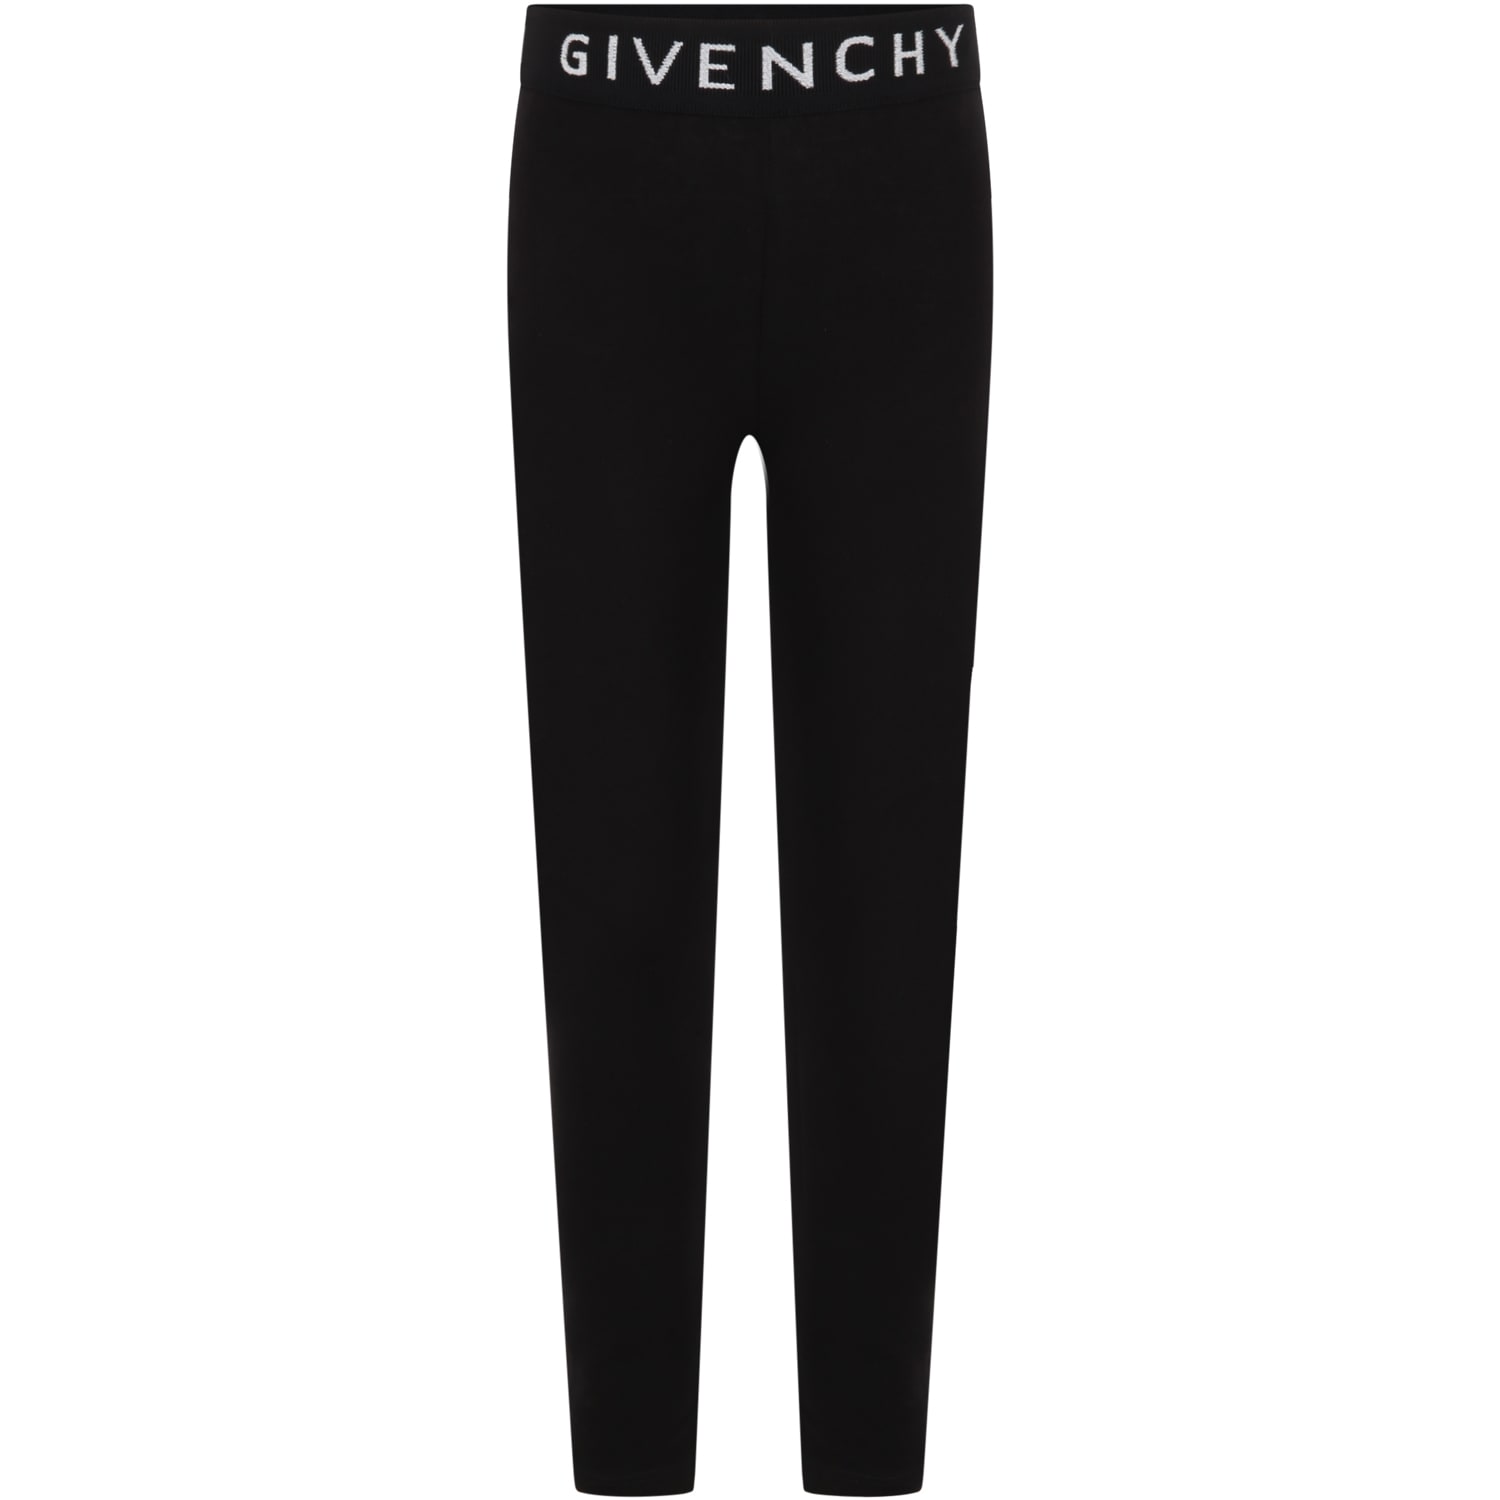 GIVENCHY leggings Black for girls